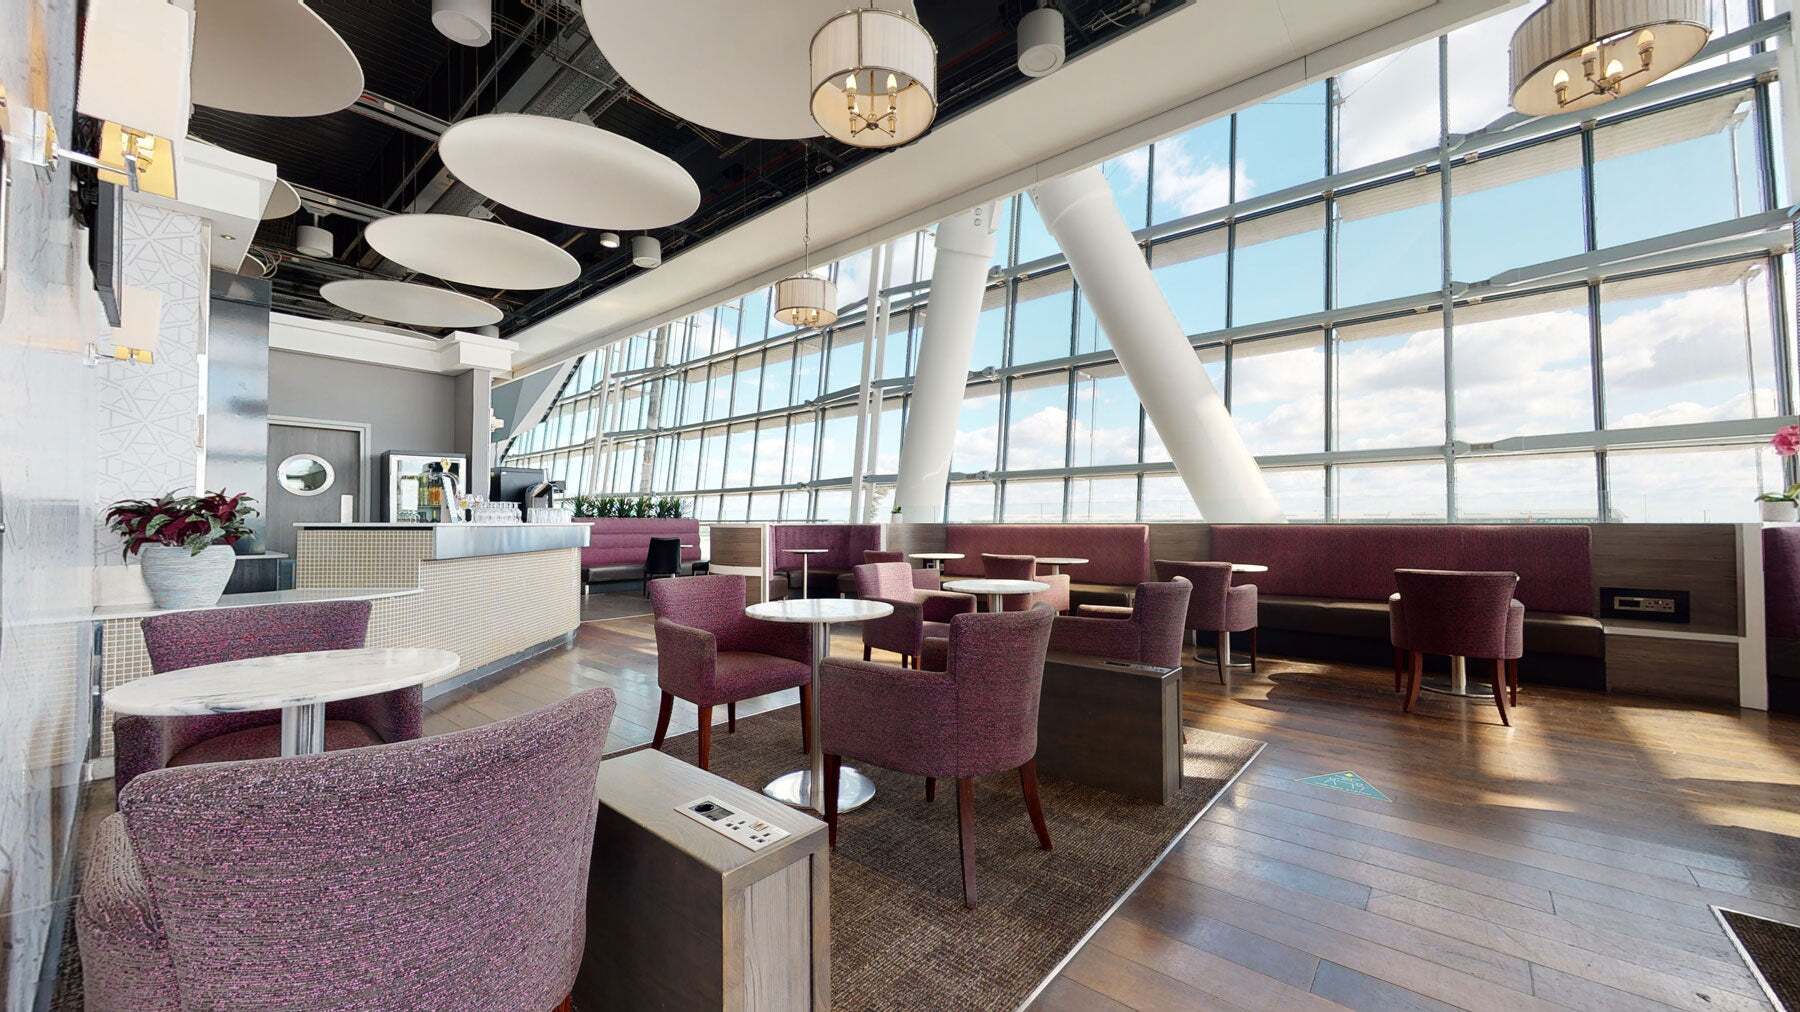 Club Aspire Lounge (Terminal 5) – Aeroporto Heathrow, Londres (LHR)